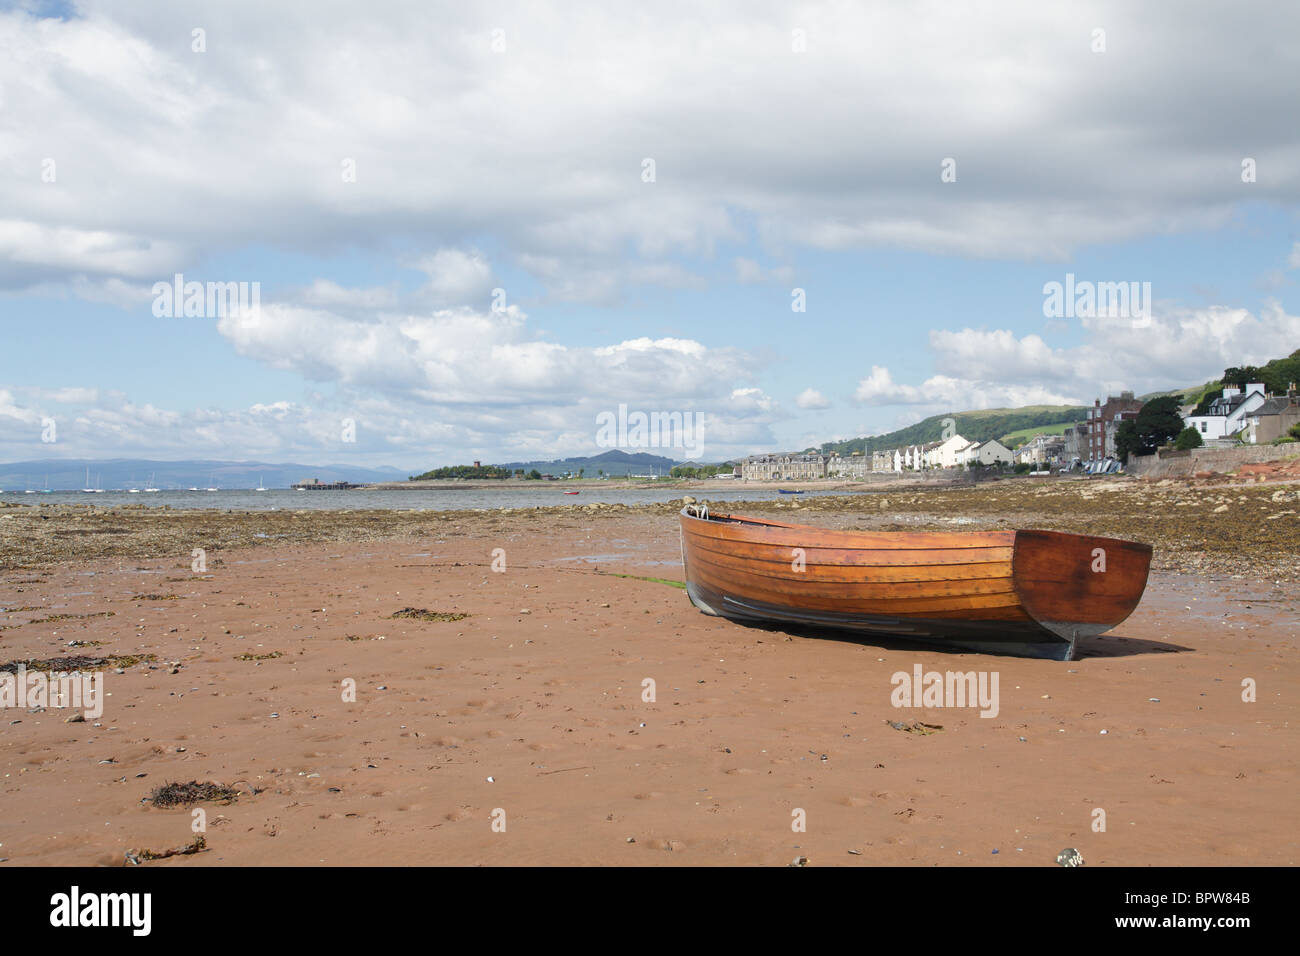 Ruderboot am Strand von Fairlie, einem Dorf am Ayrshire Coastal Path neben dem Firth of Clyde, North Ayrshire, Westküste Schottlands, Großbritannien Stockfoto